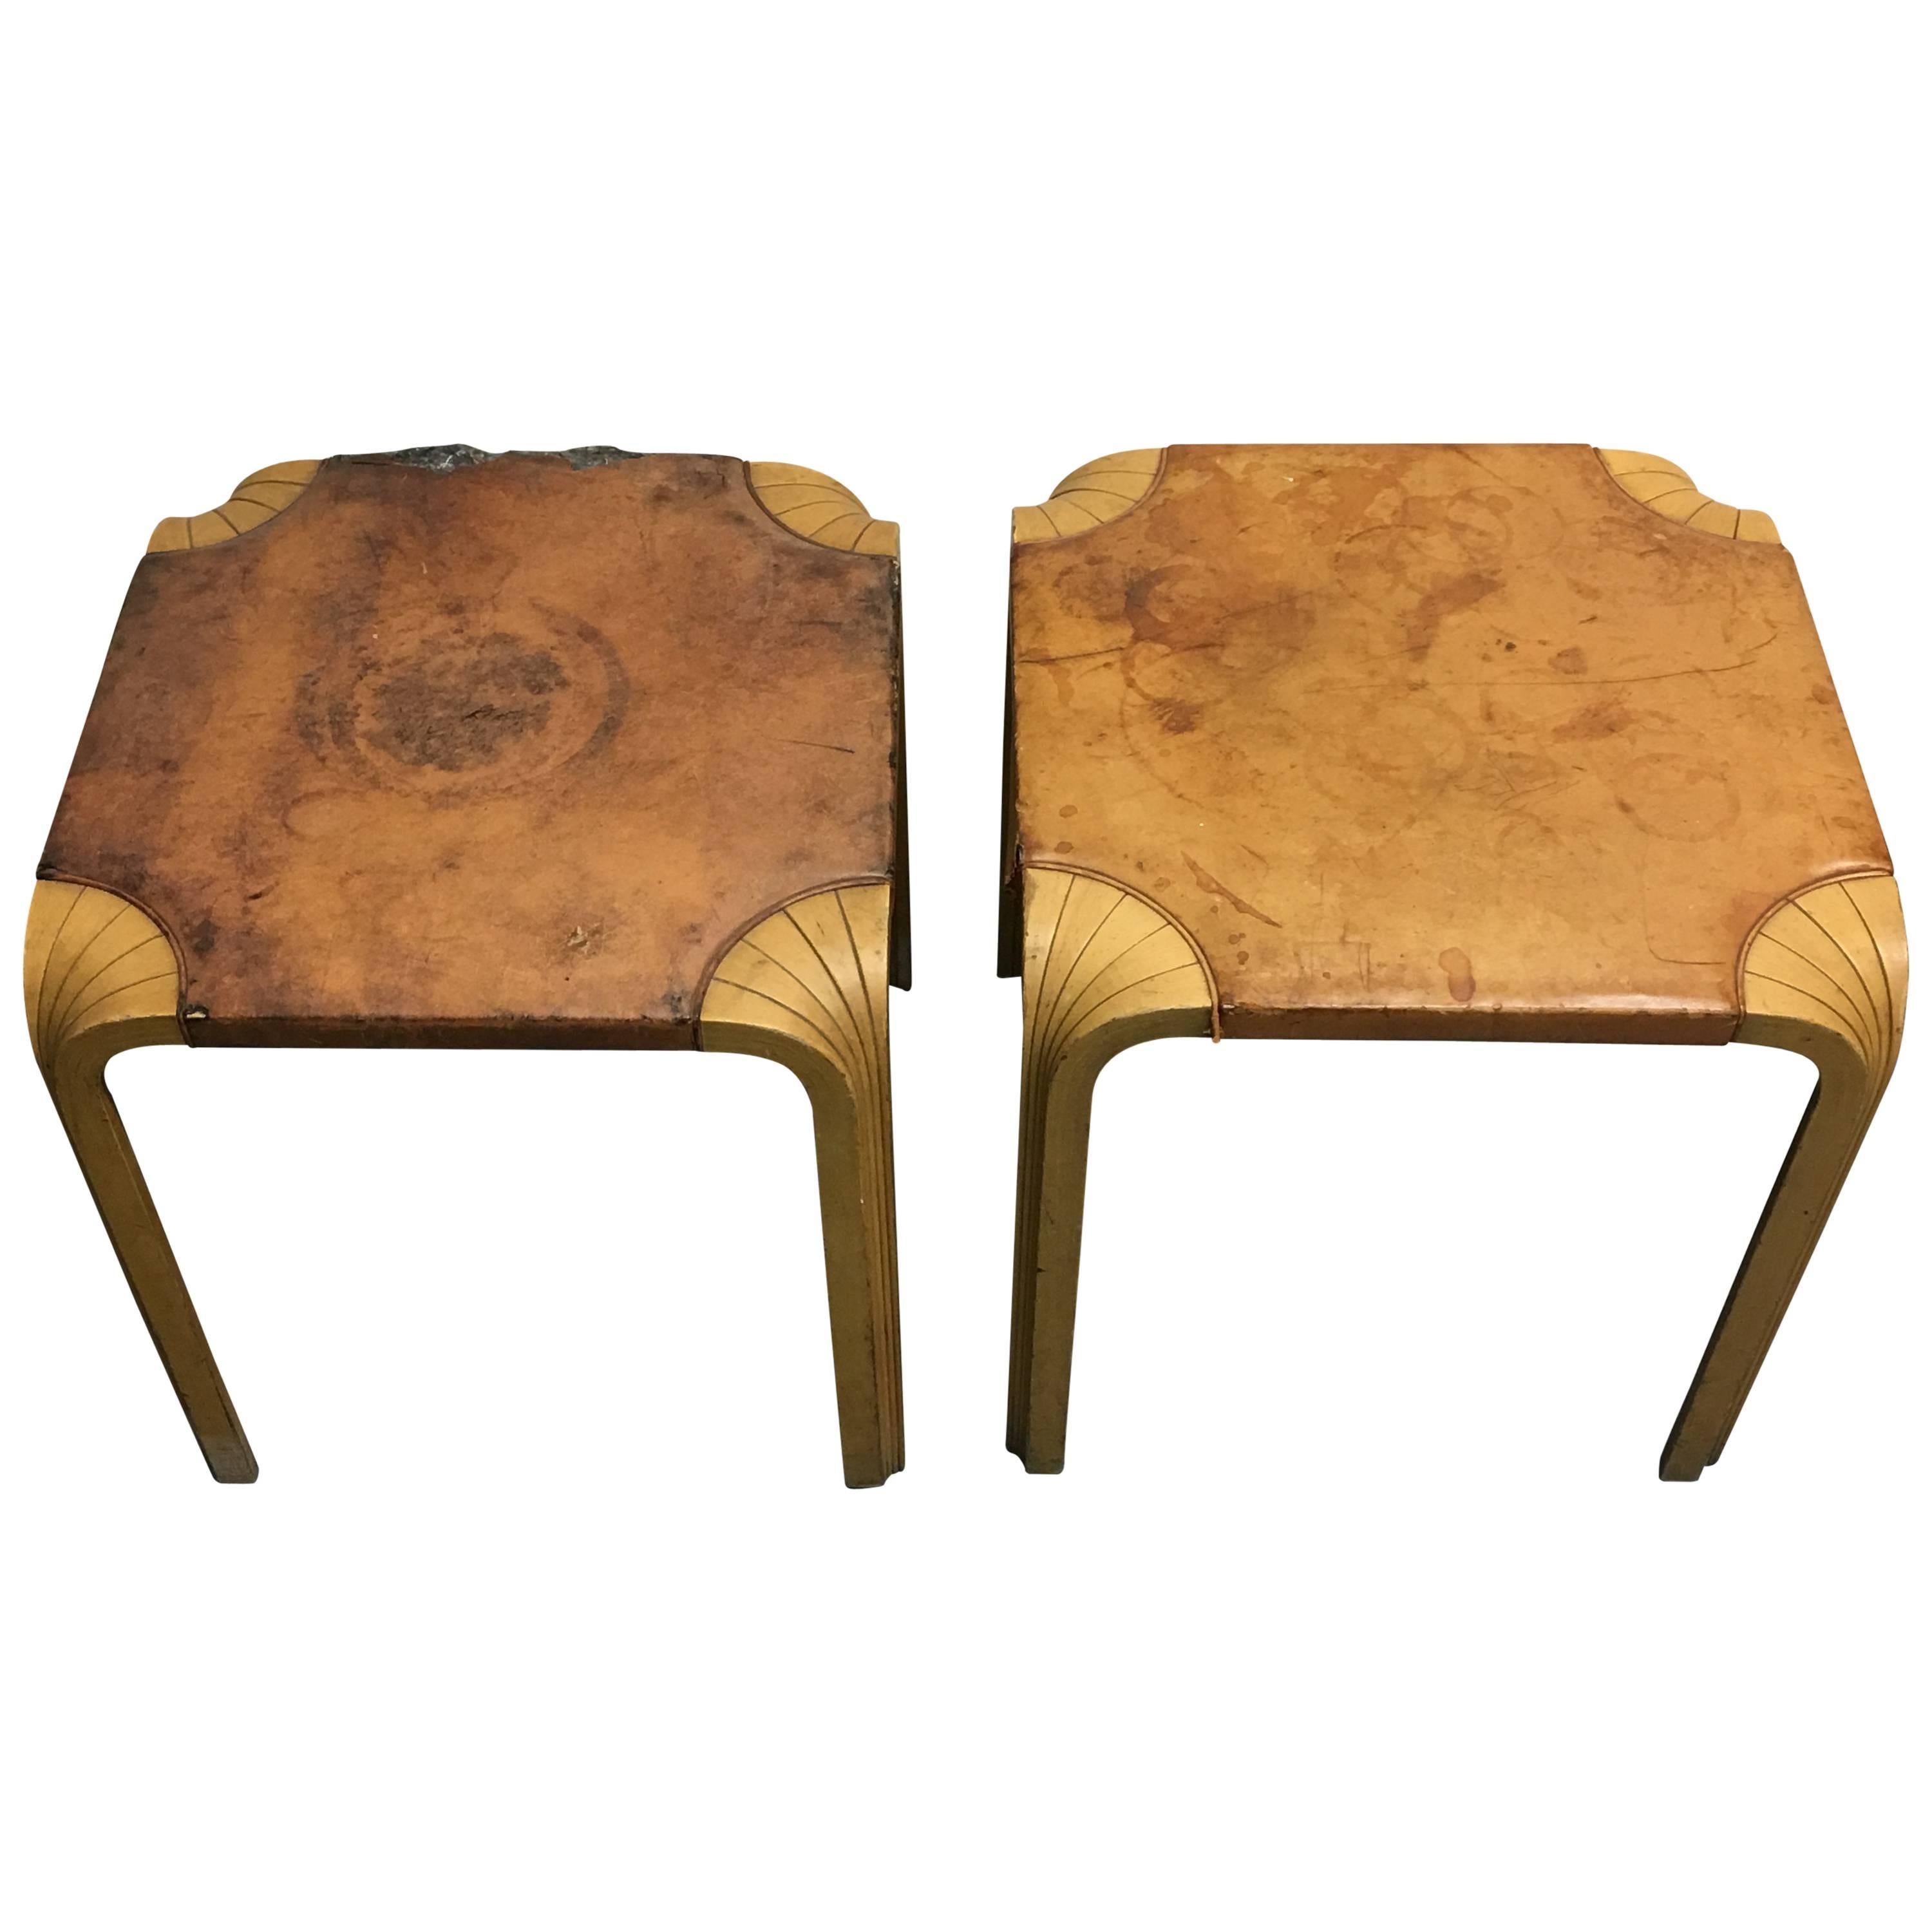 Two Alvar Aalto Fan Leg Stools or Side Tables